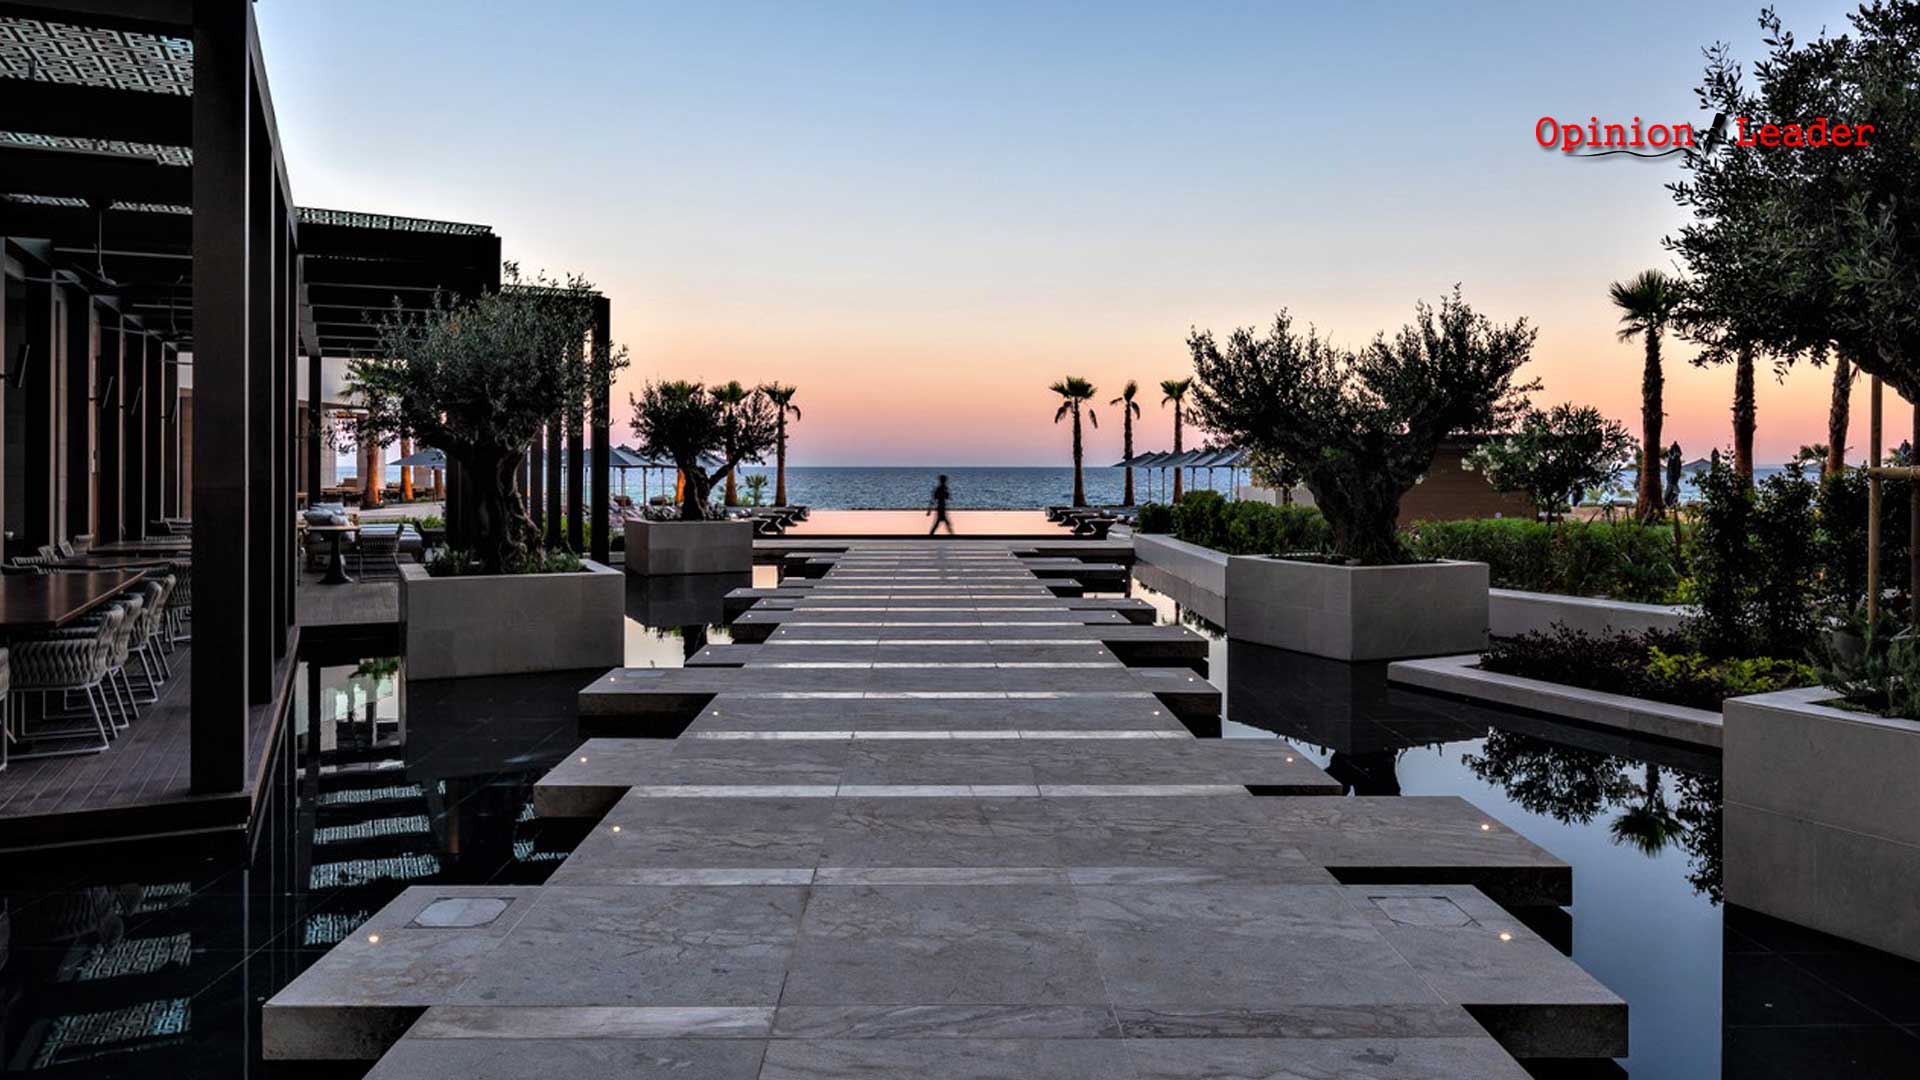 AMARA υπερπολυτελές ξενοδοχείο - Λεμεσό - Κύπρος